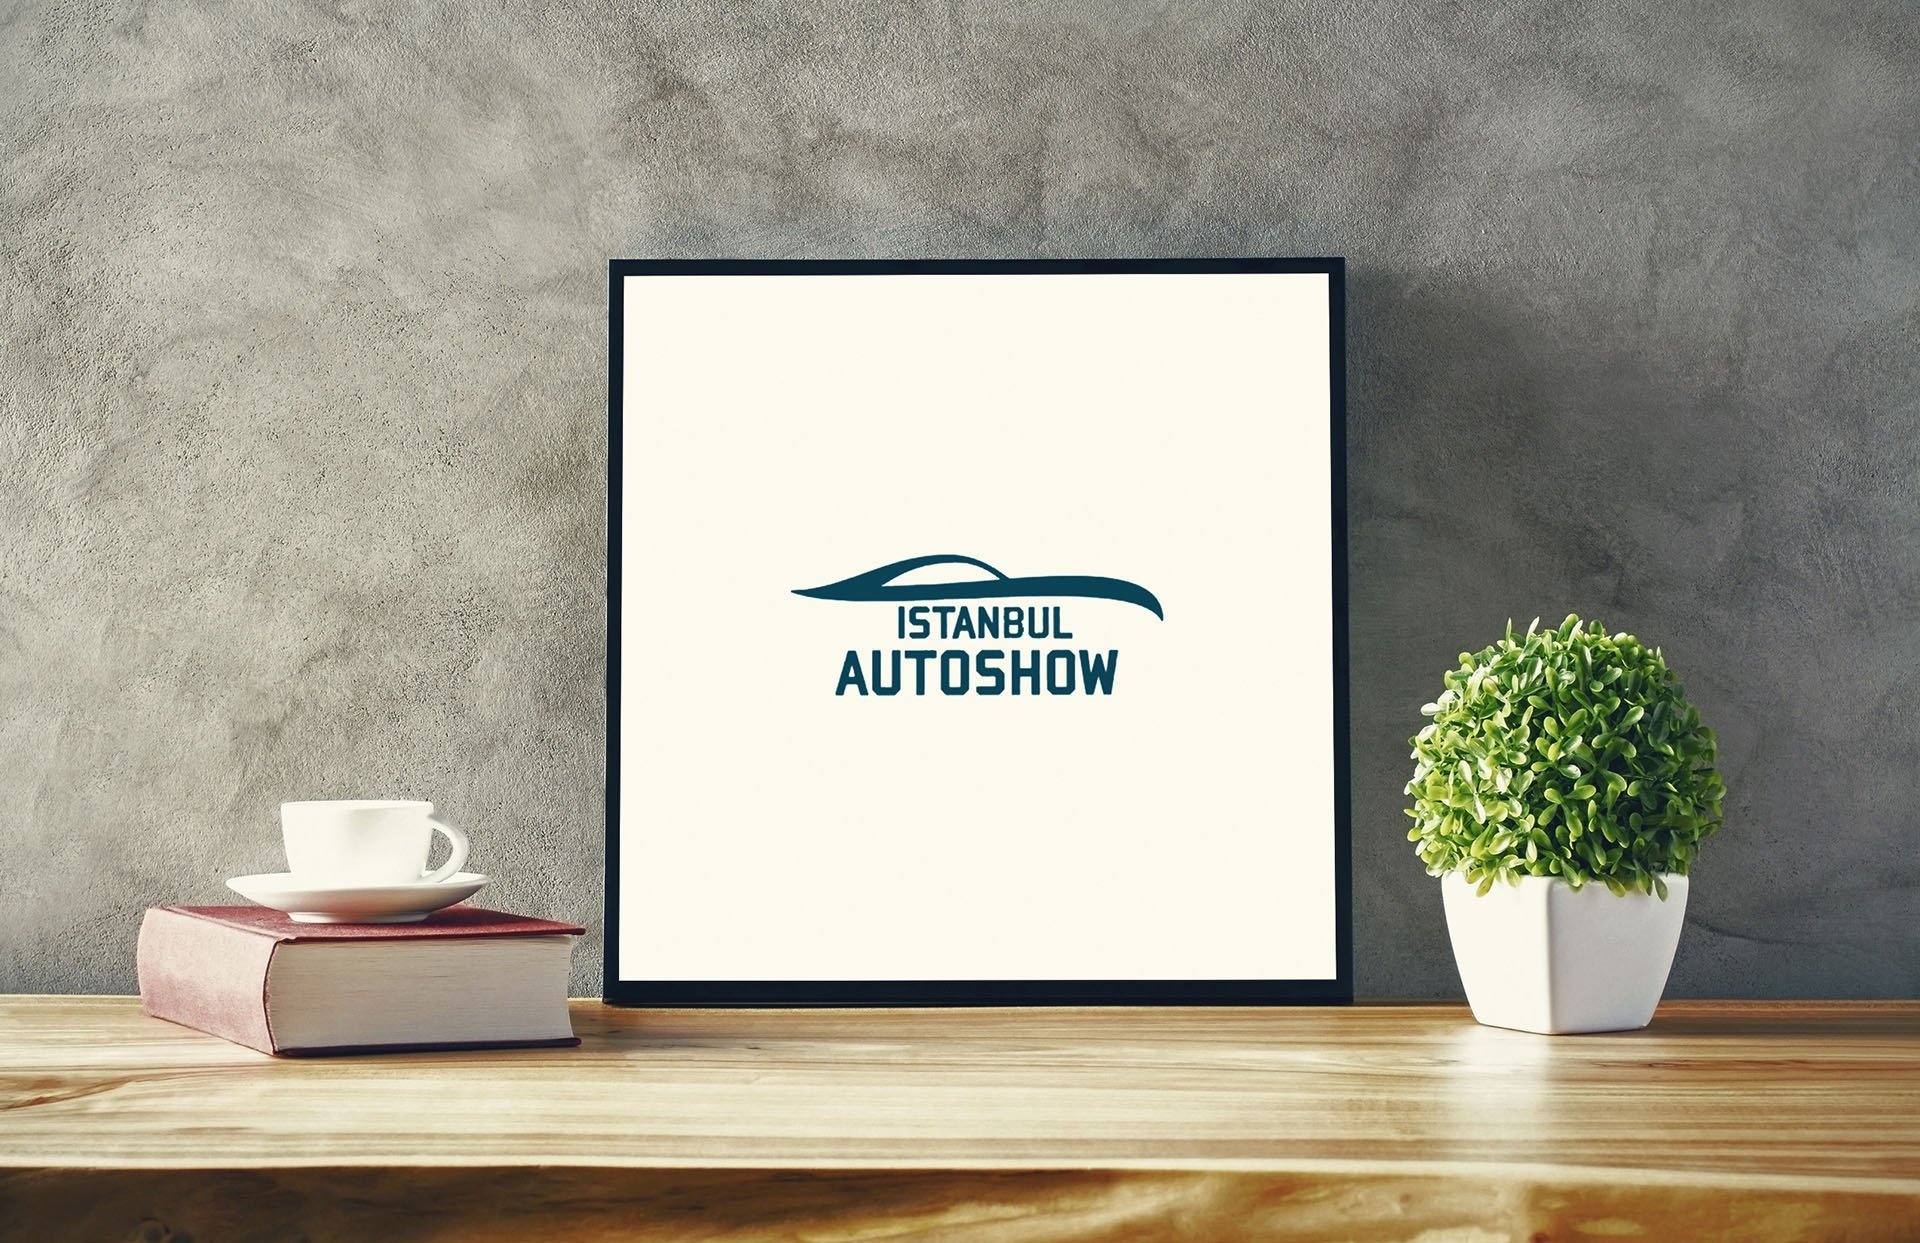 Autoshow